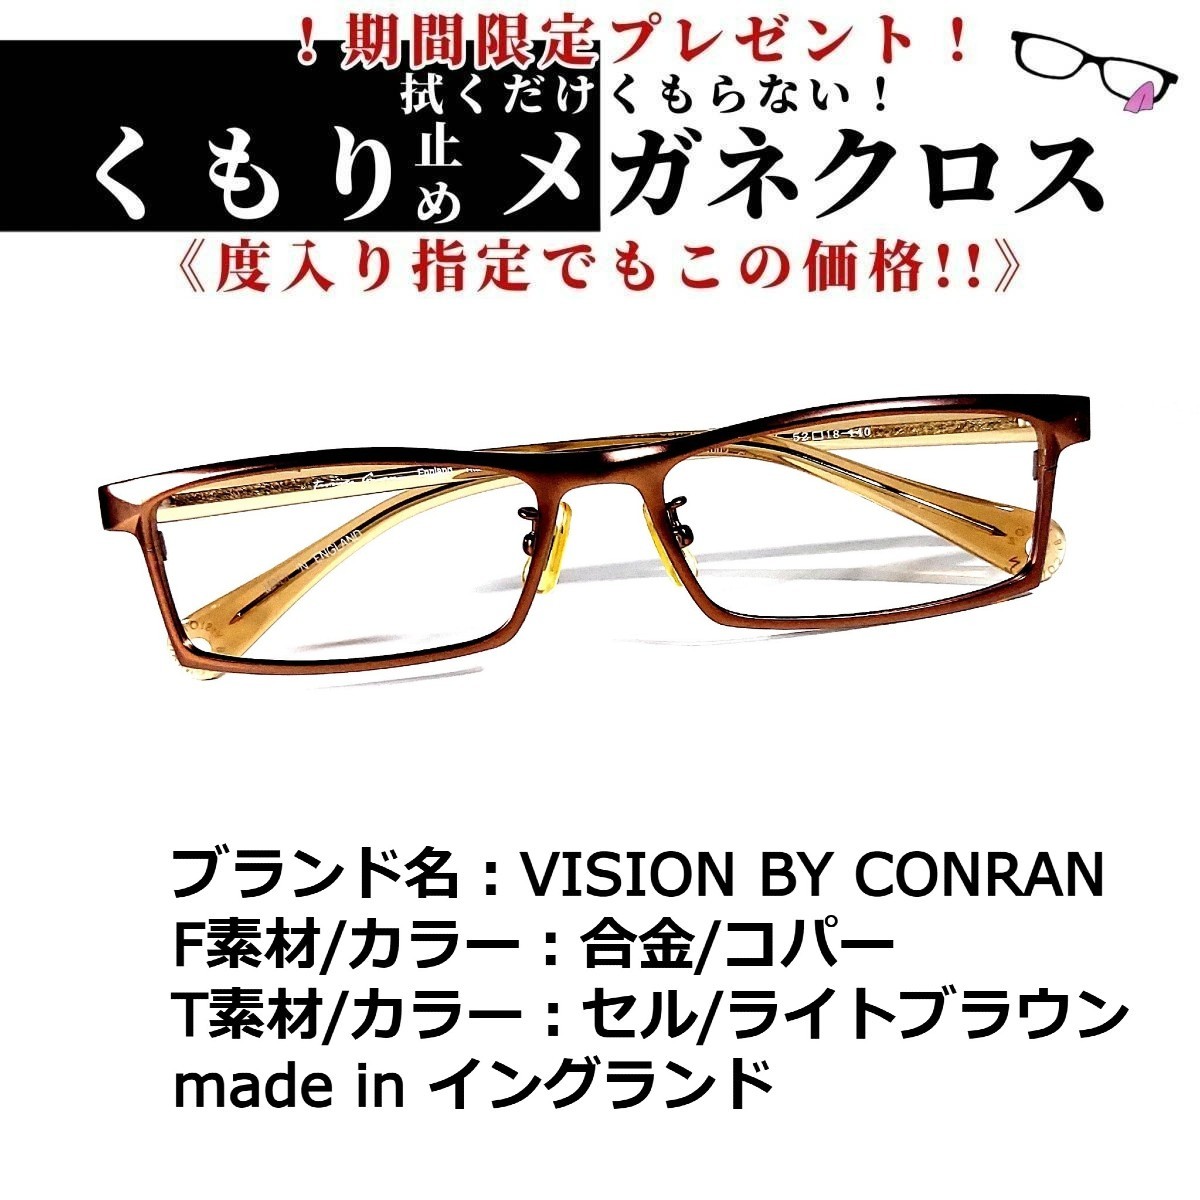 最新な No.1727メガネ VISION BY CONRAN espaciomalvon.com.ar